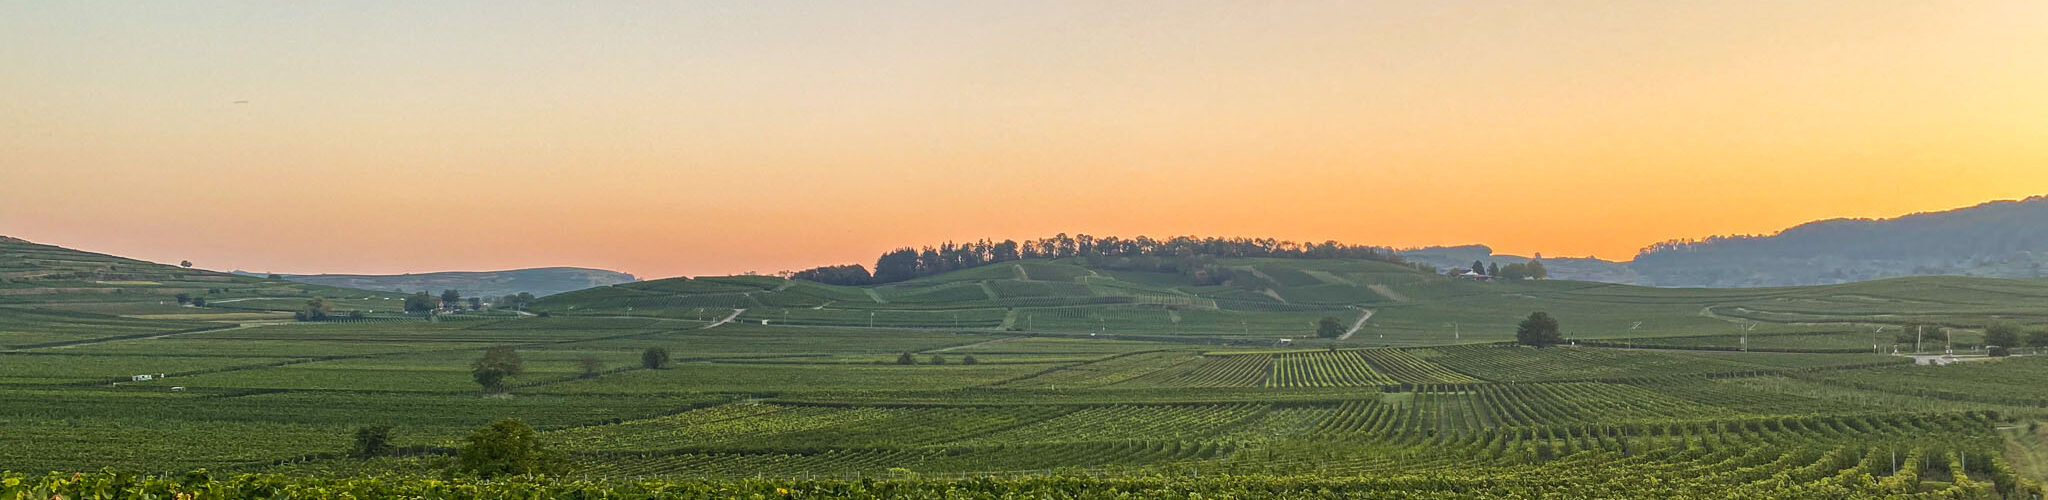 Weinberge im Sonnenaufgang während der Chardonnay Traubenlese